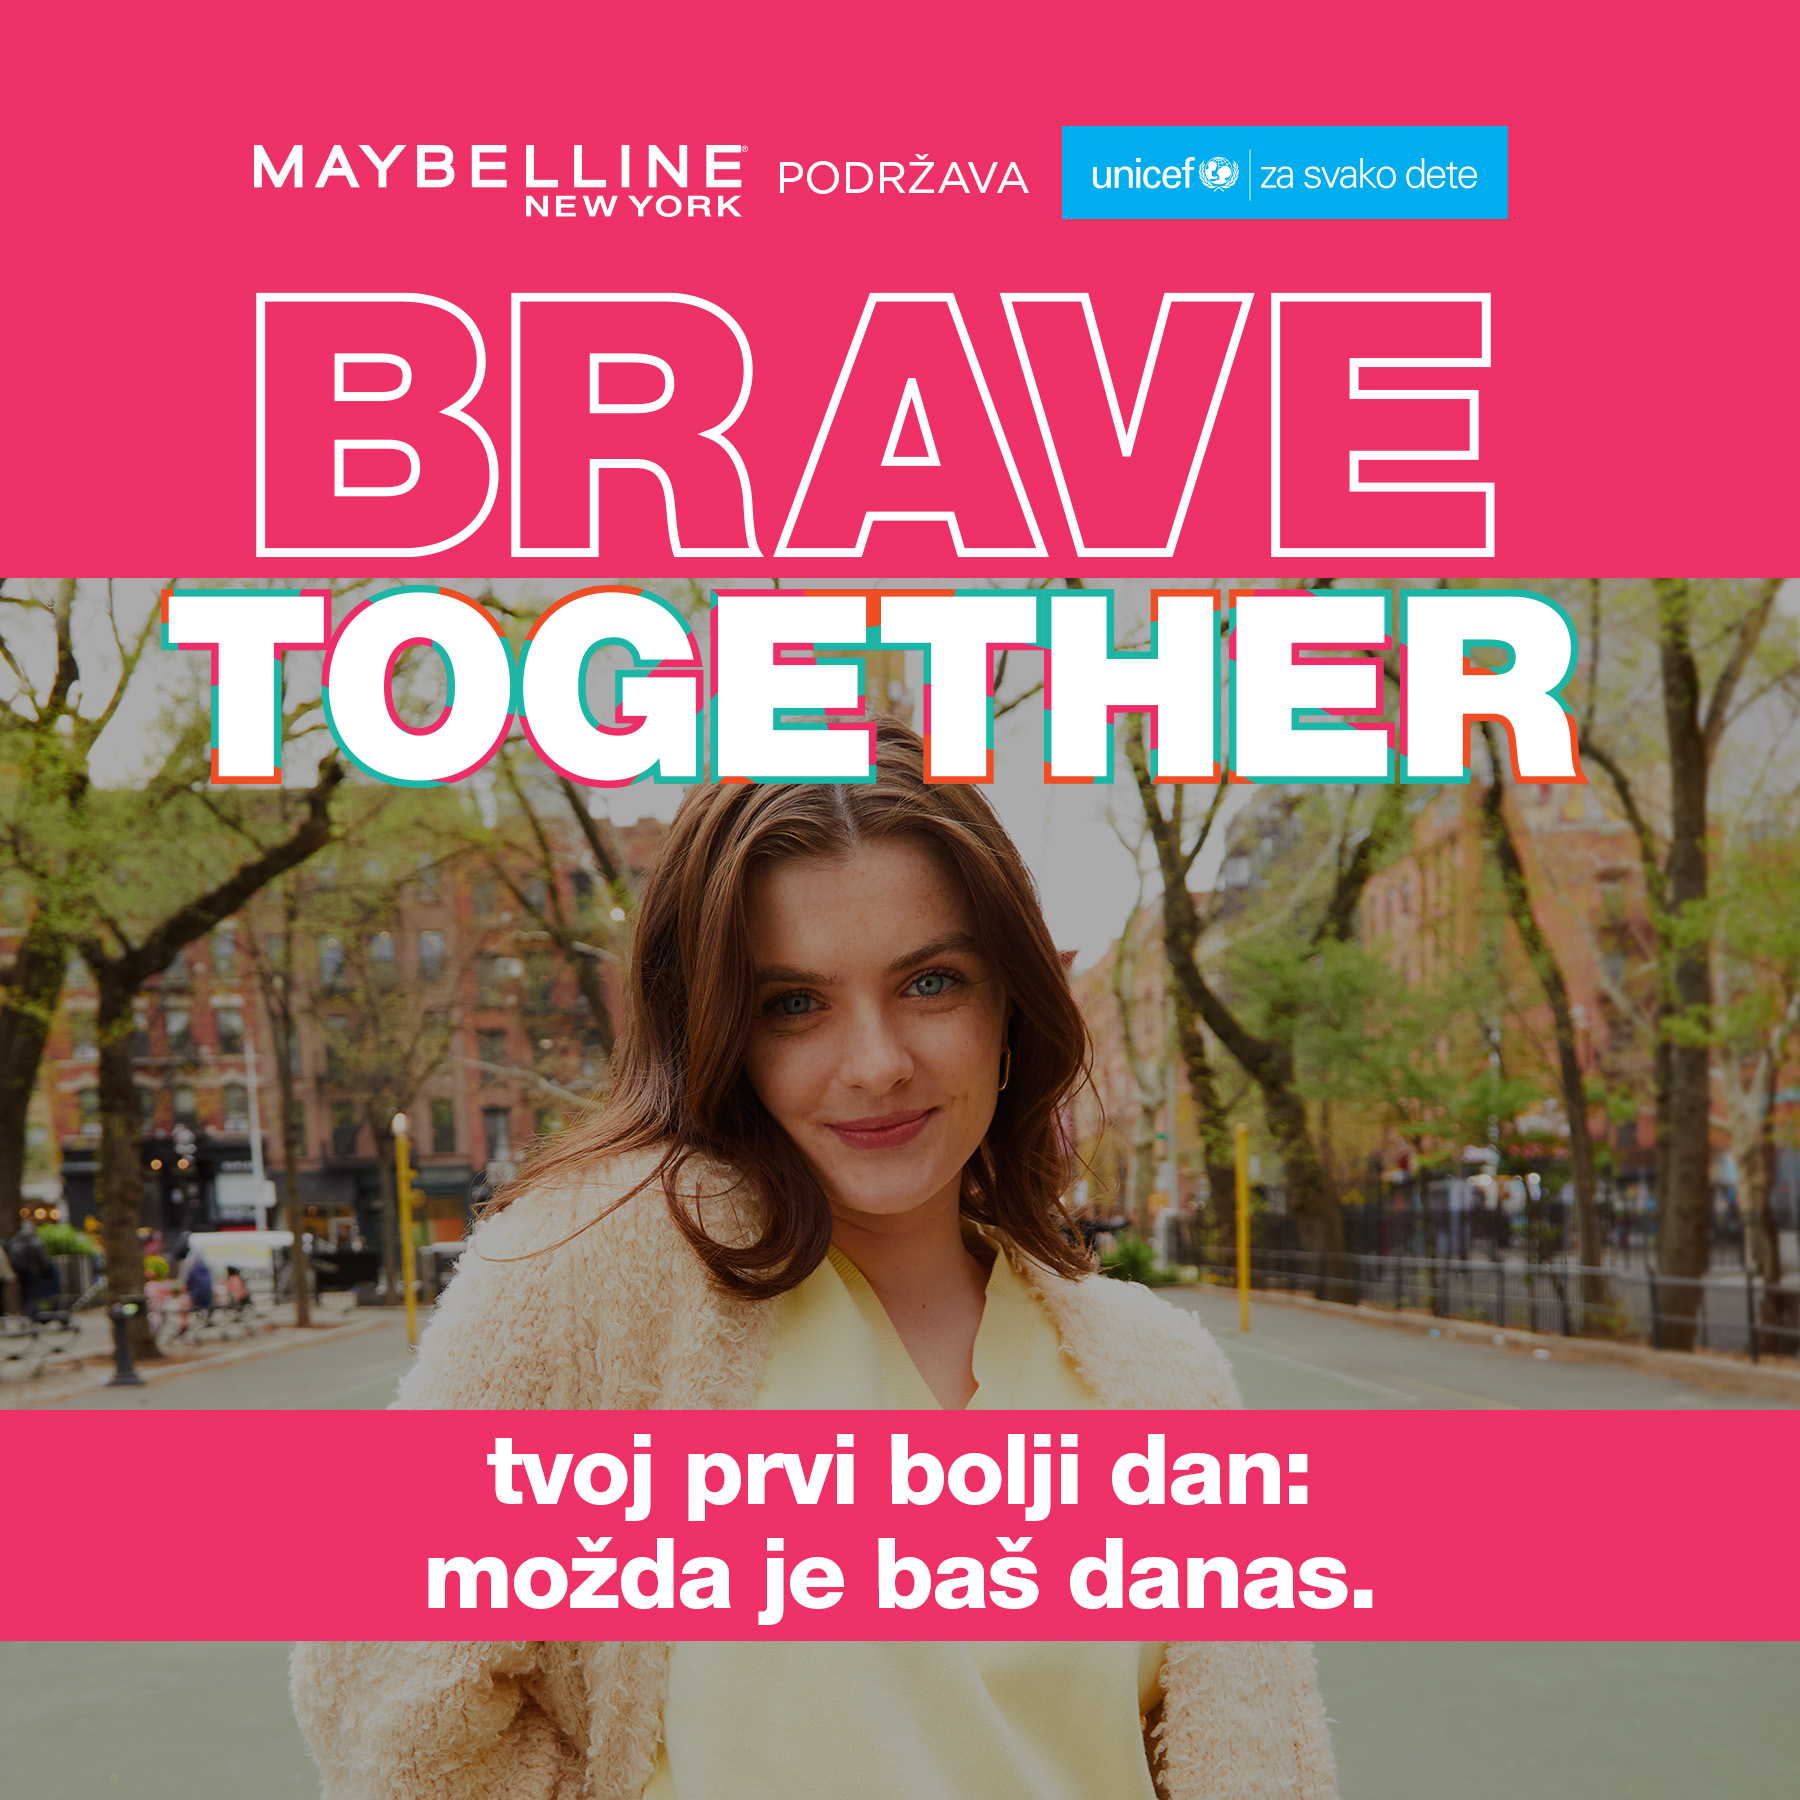 UNICEF u Srbiji i Maybelline New York udružili snage da mladi koji se suočavaju sa mentalnim problemima dobiju podršku